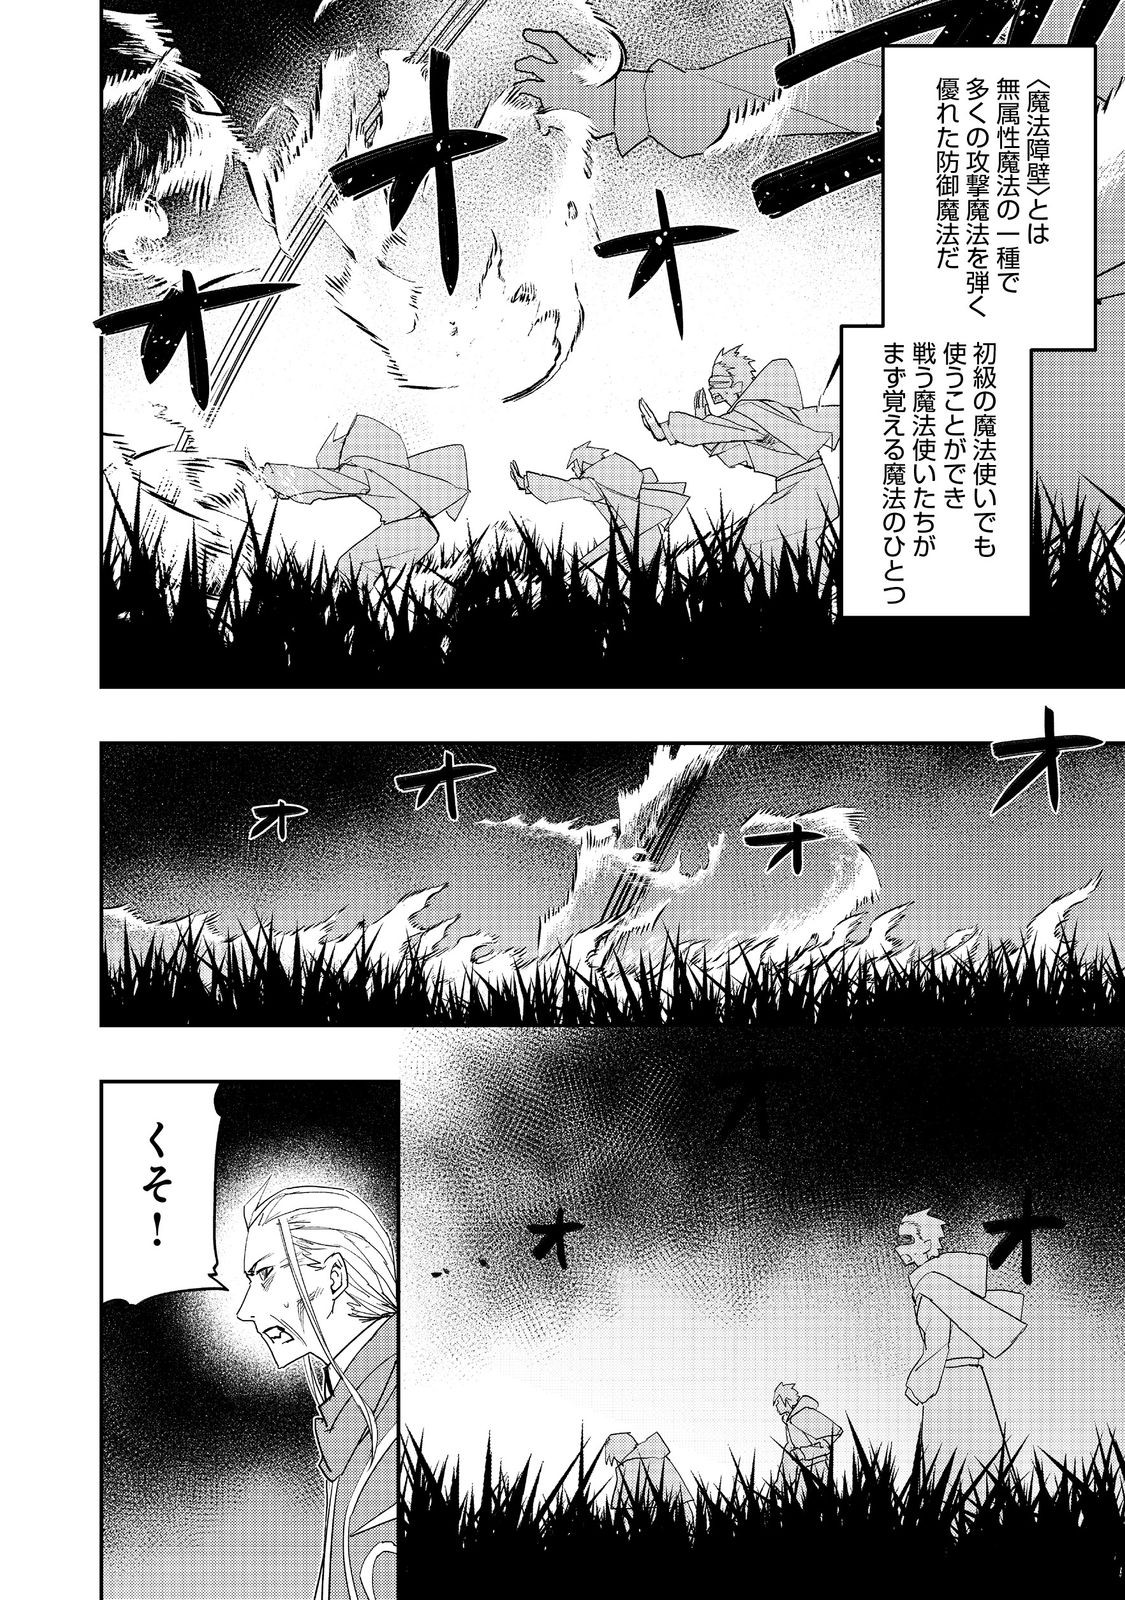 Mizu Zokusei no Mahou Tsukai - Chapter 27 - Page 4